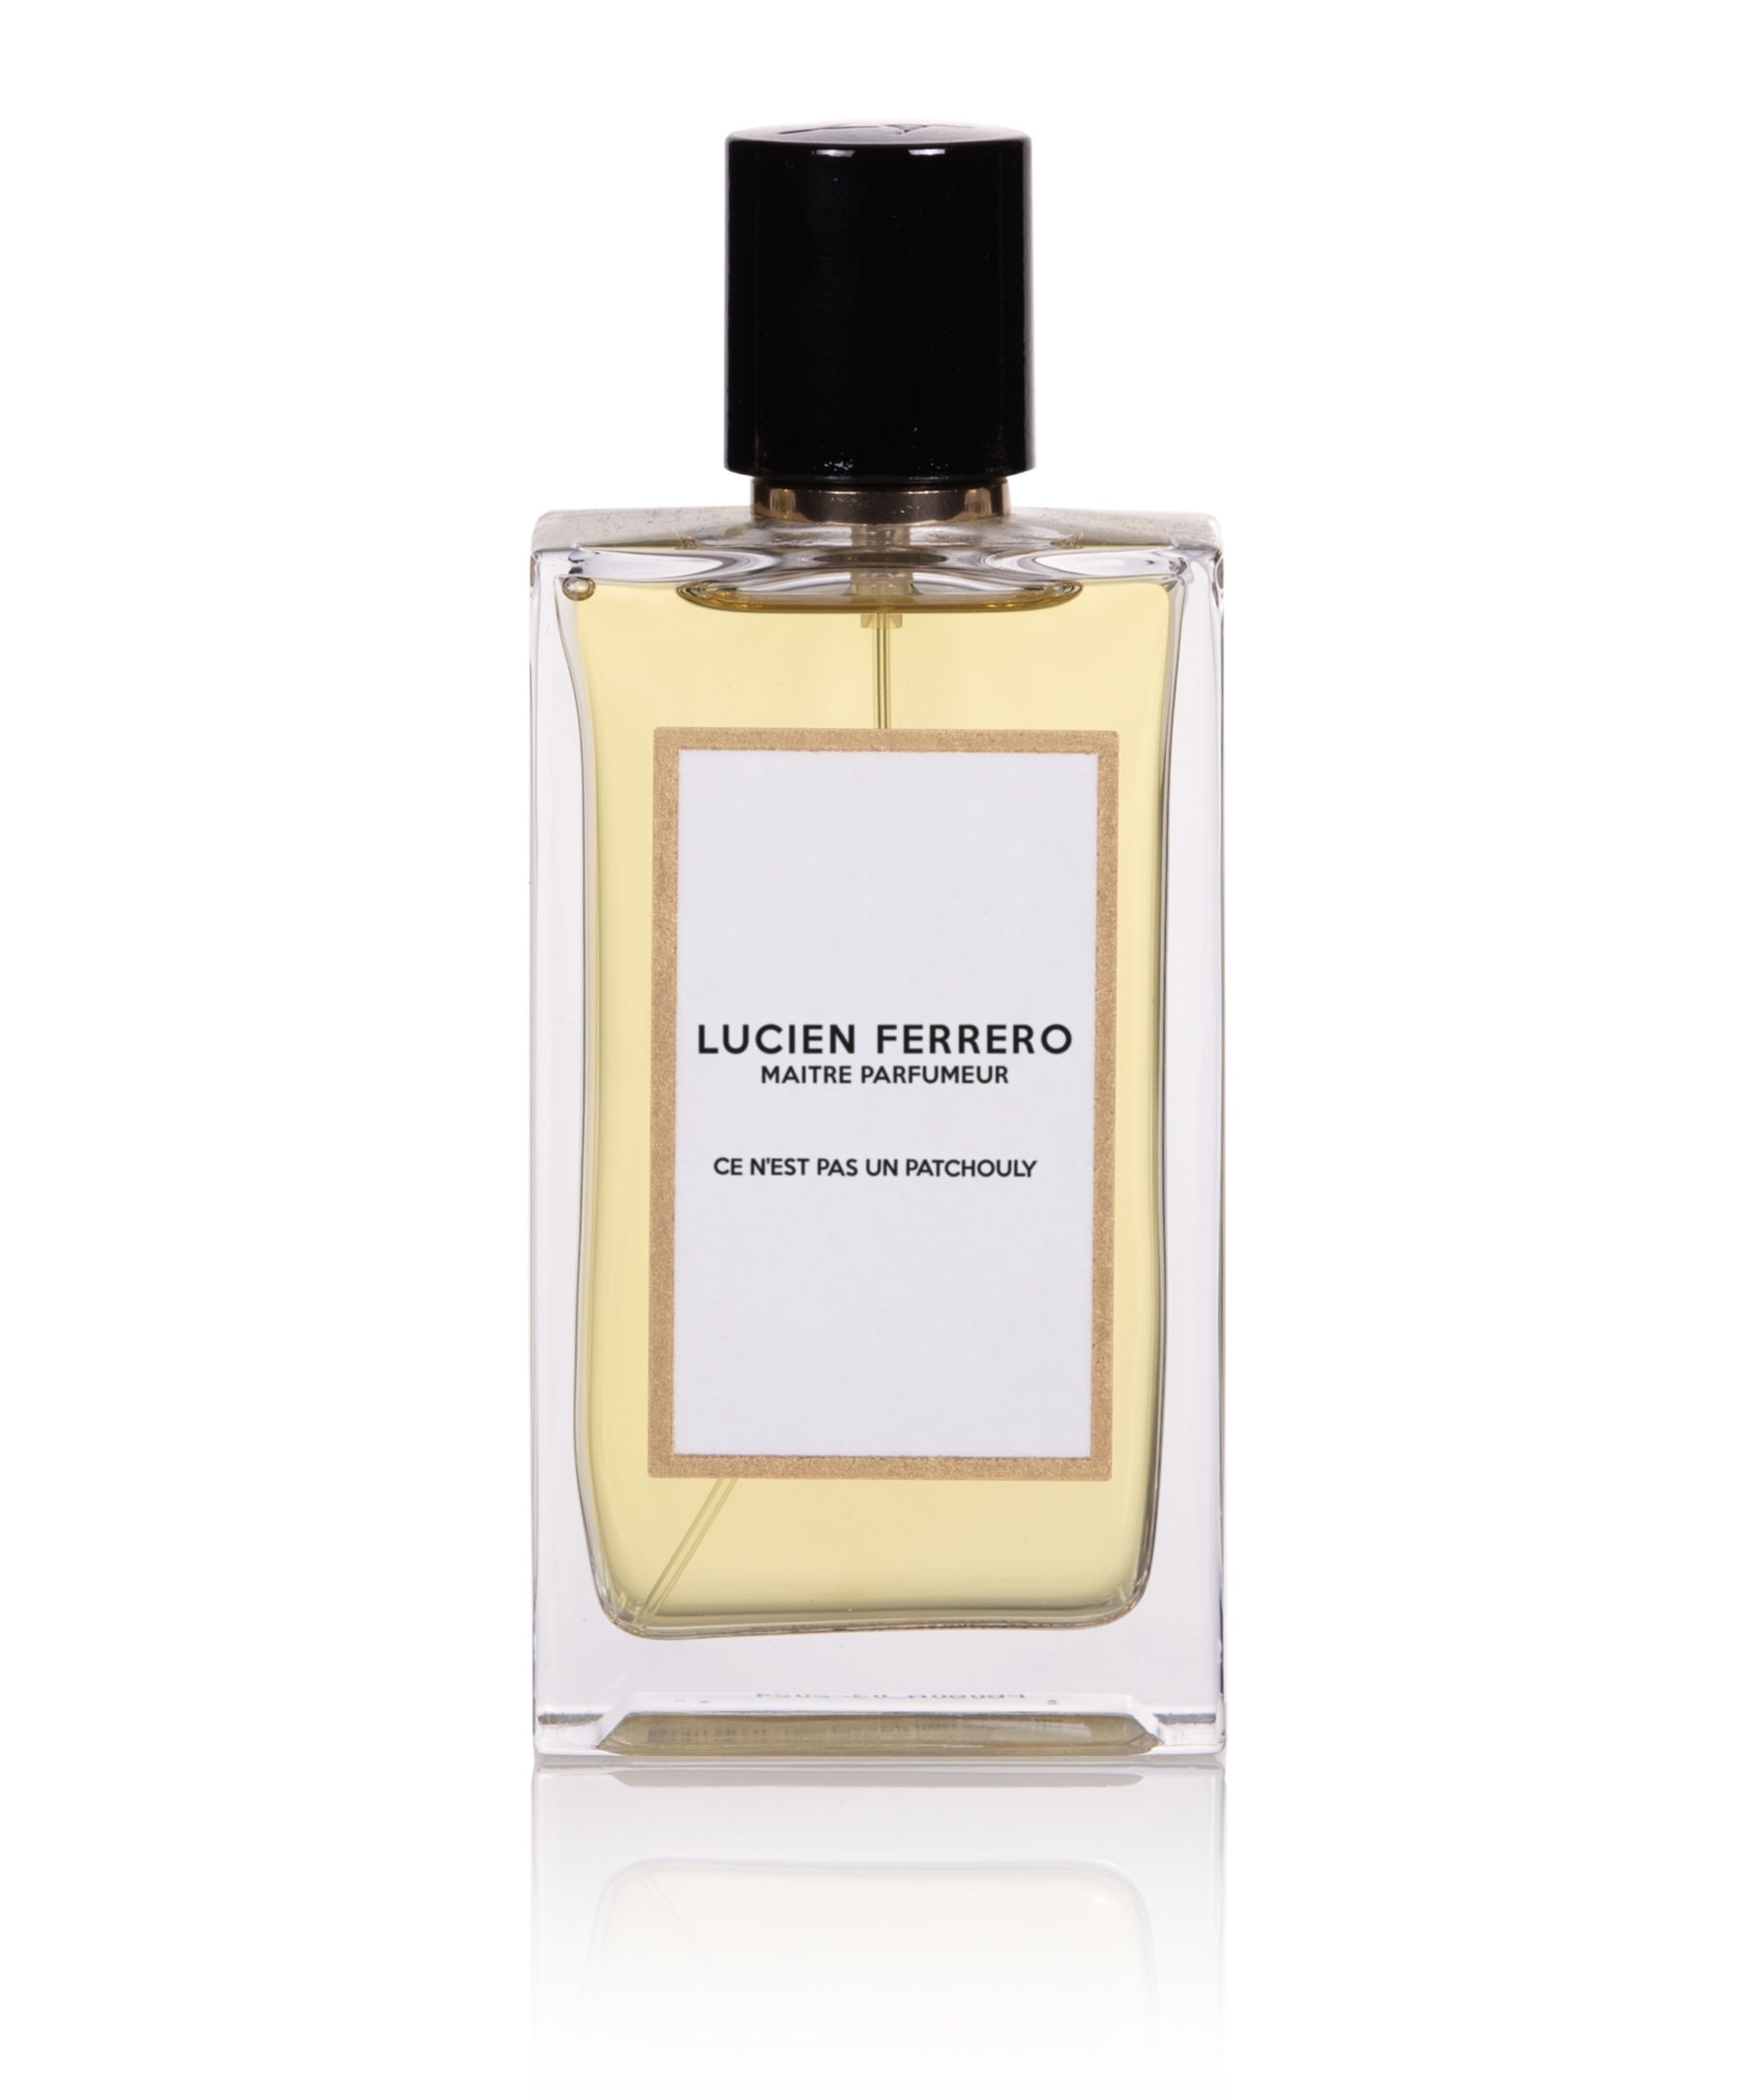 Ce N'est Pas Un Patchouly Lucien Ferrero Maitre Parfumeur Review ~  Fragrance Reviews